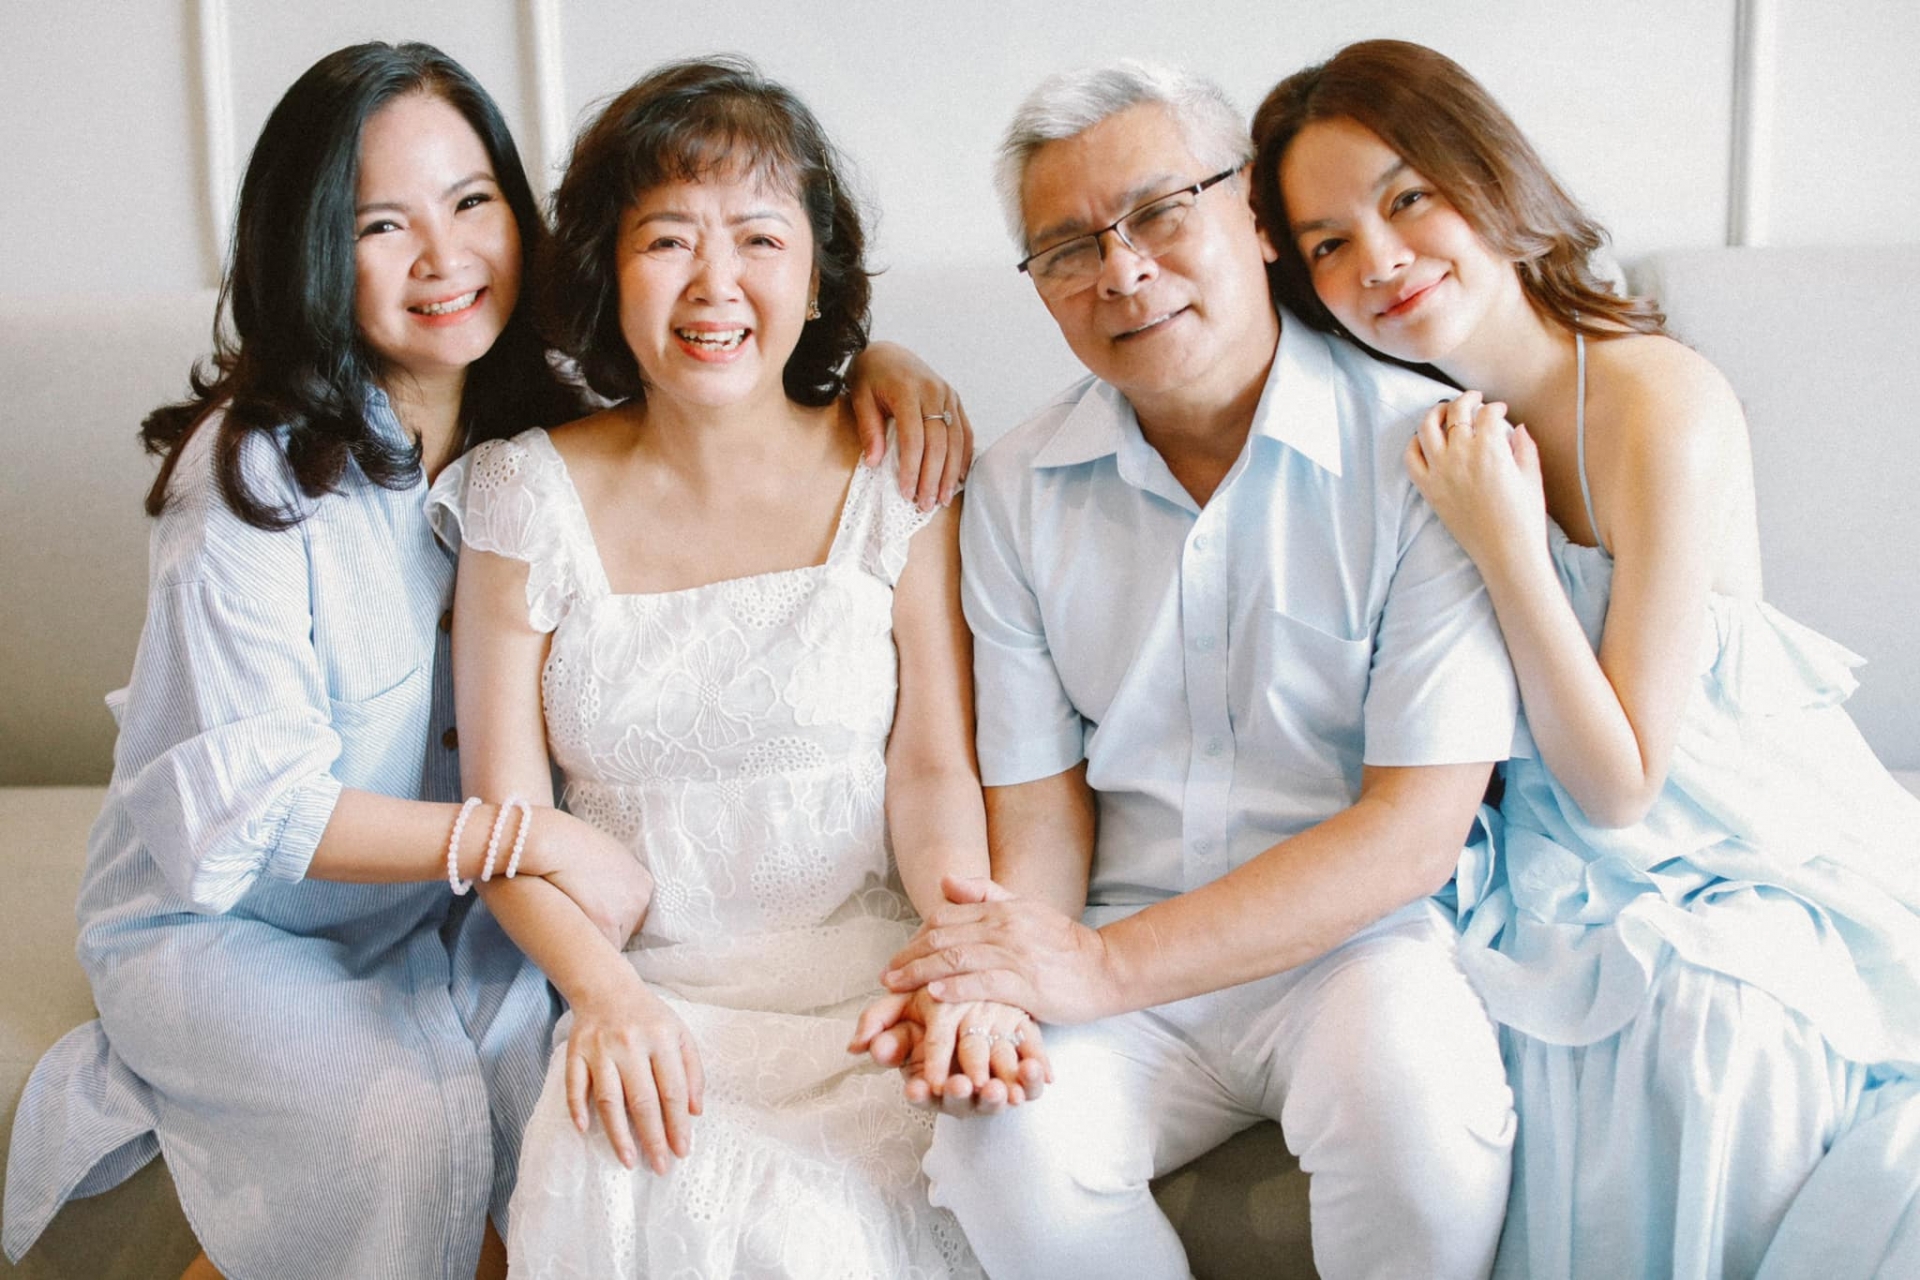 Phạm Quỳnh Anh chia sẻ xúc động về gia đình, xem ảnh mới thấy gia đình toàn mĩ nhân - Ảnh 2